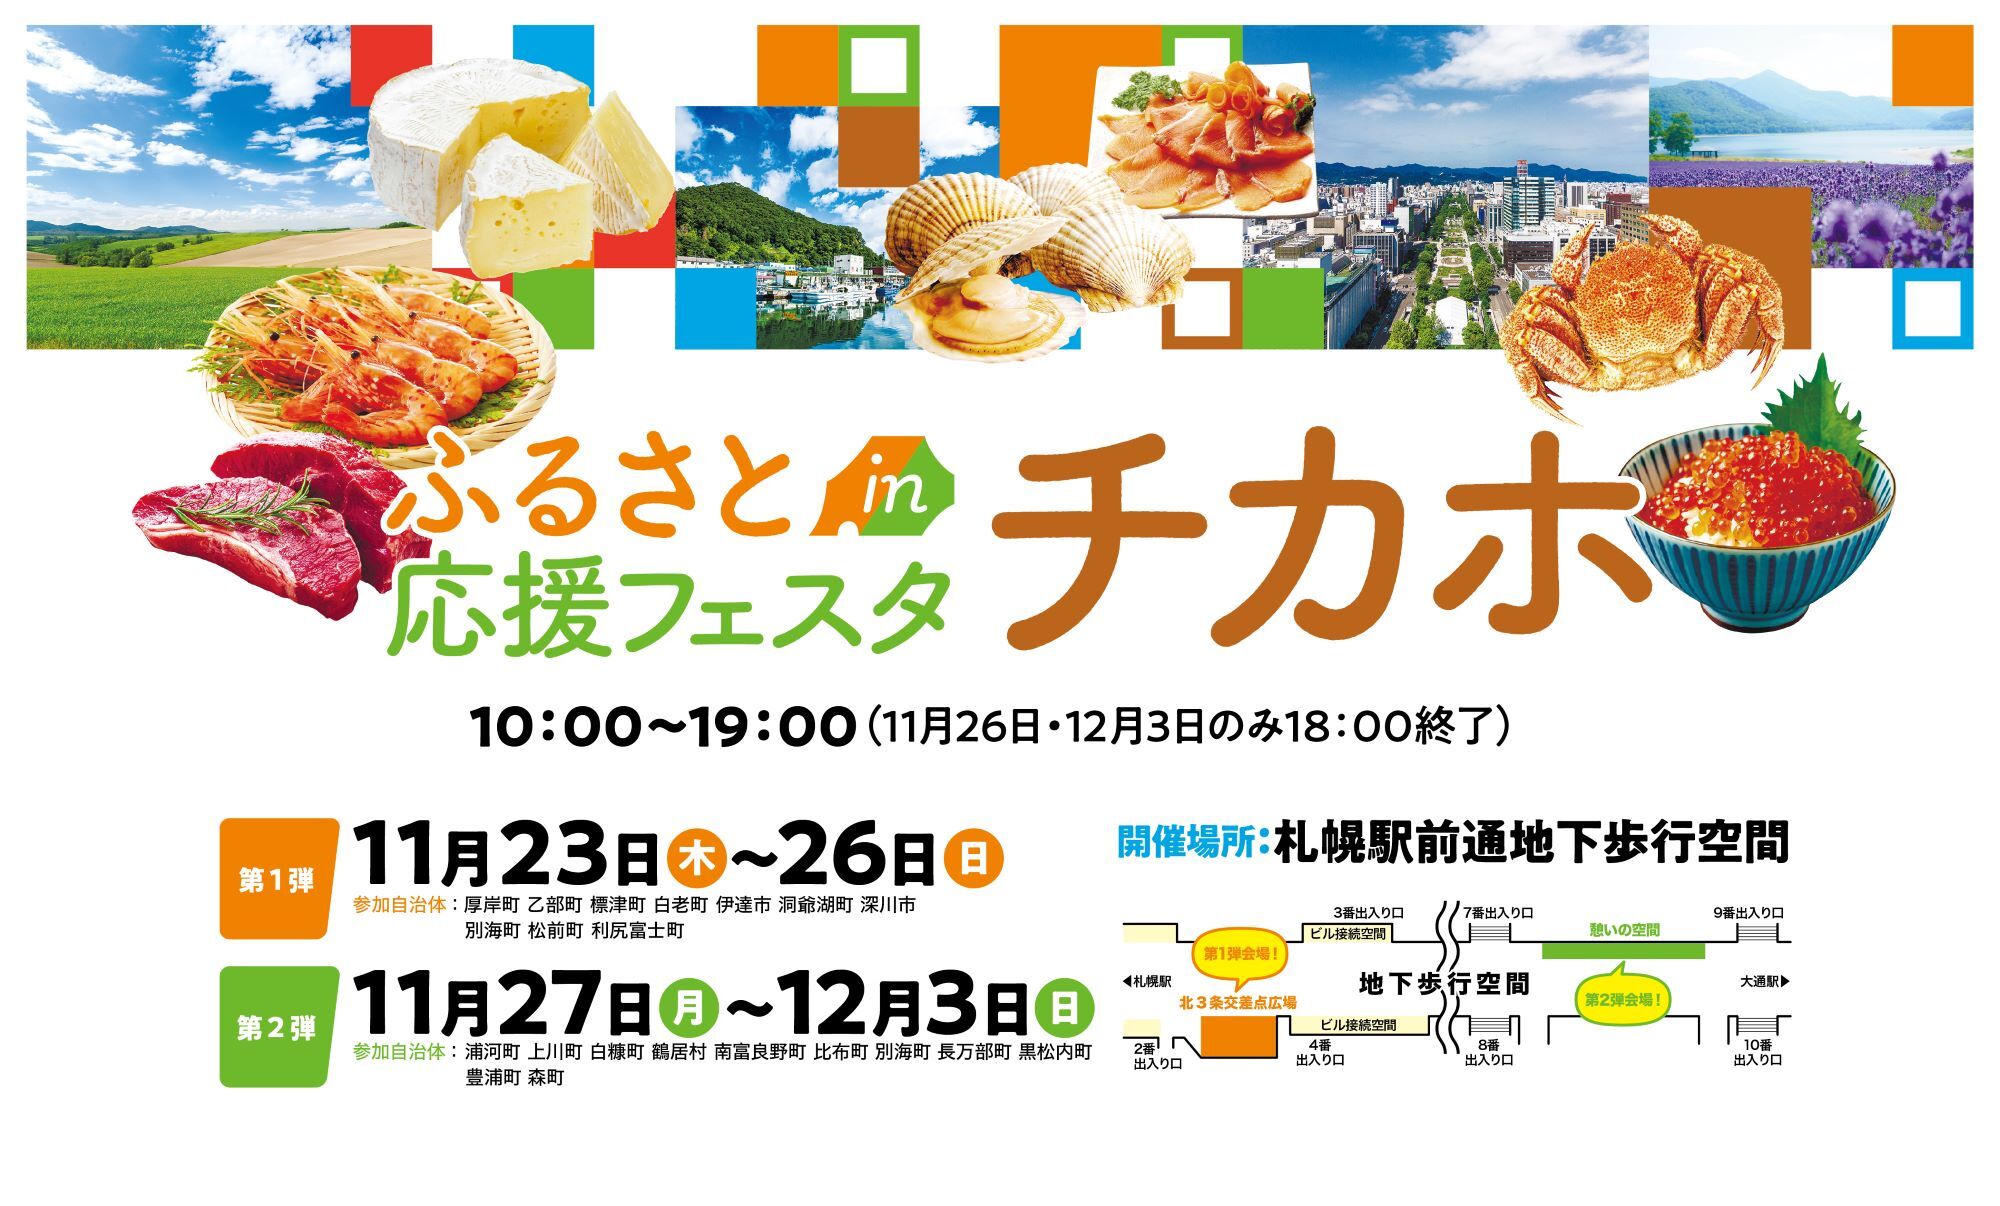 さぁ、お鍋の季節です！ 自然薯とろろ鍋、イノシシ鍋…神戸三宮「黒十 神戸本店」で冬のお楽しみ。11月22日からは冬の一品、ご宴会コースもスタート。